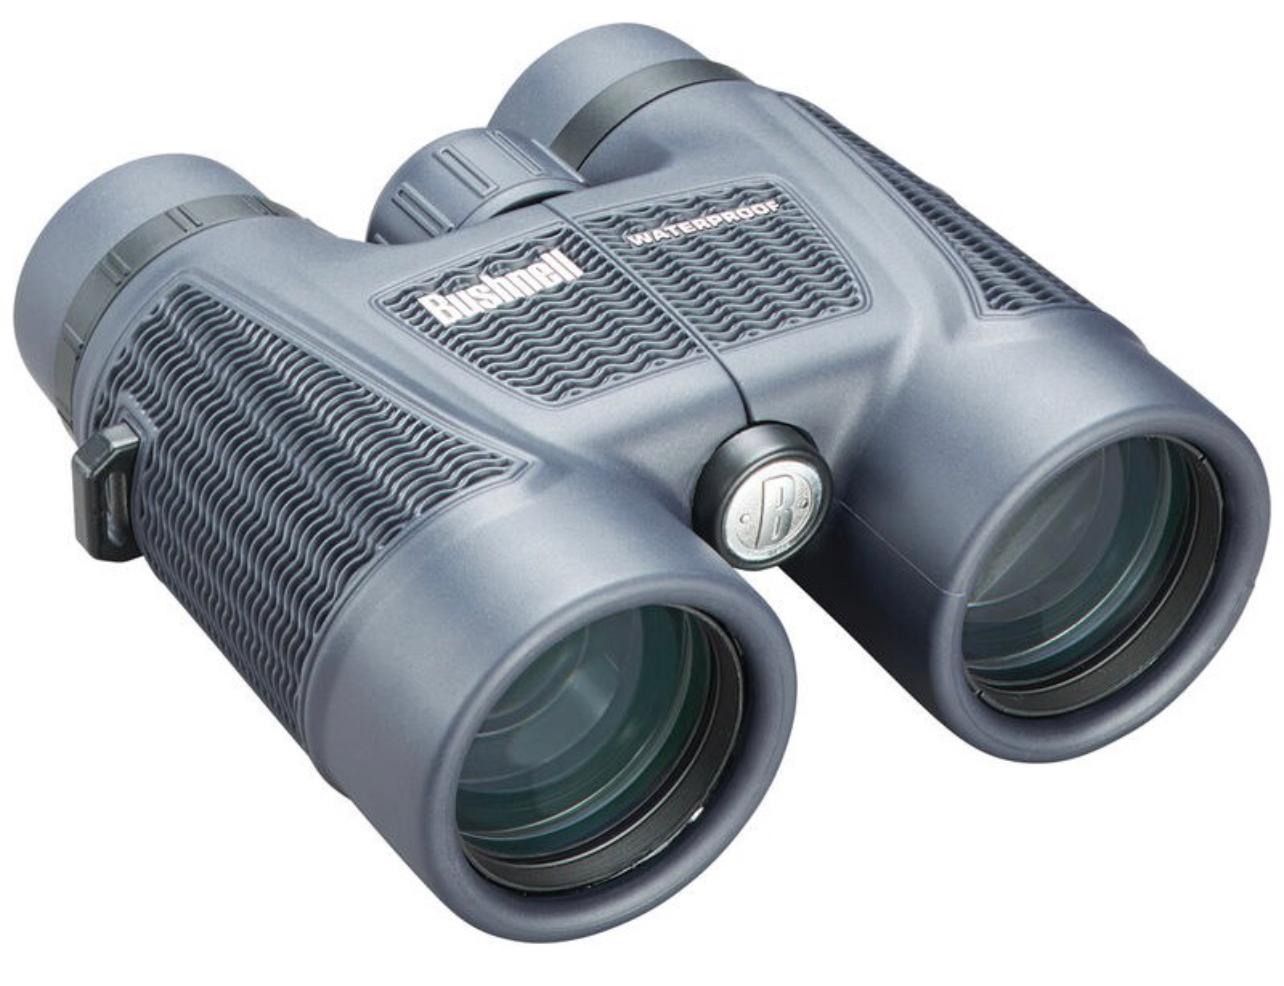 Bushnell Binoculars H20  Waterproof  8x42 (158042) - Limited Lifetime Warranty